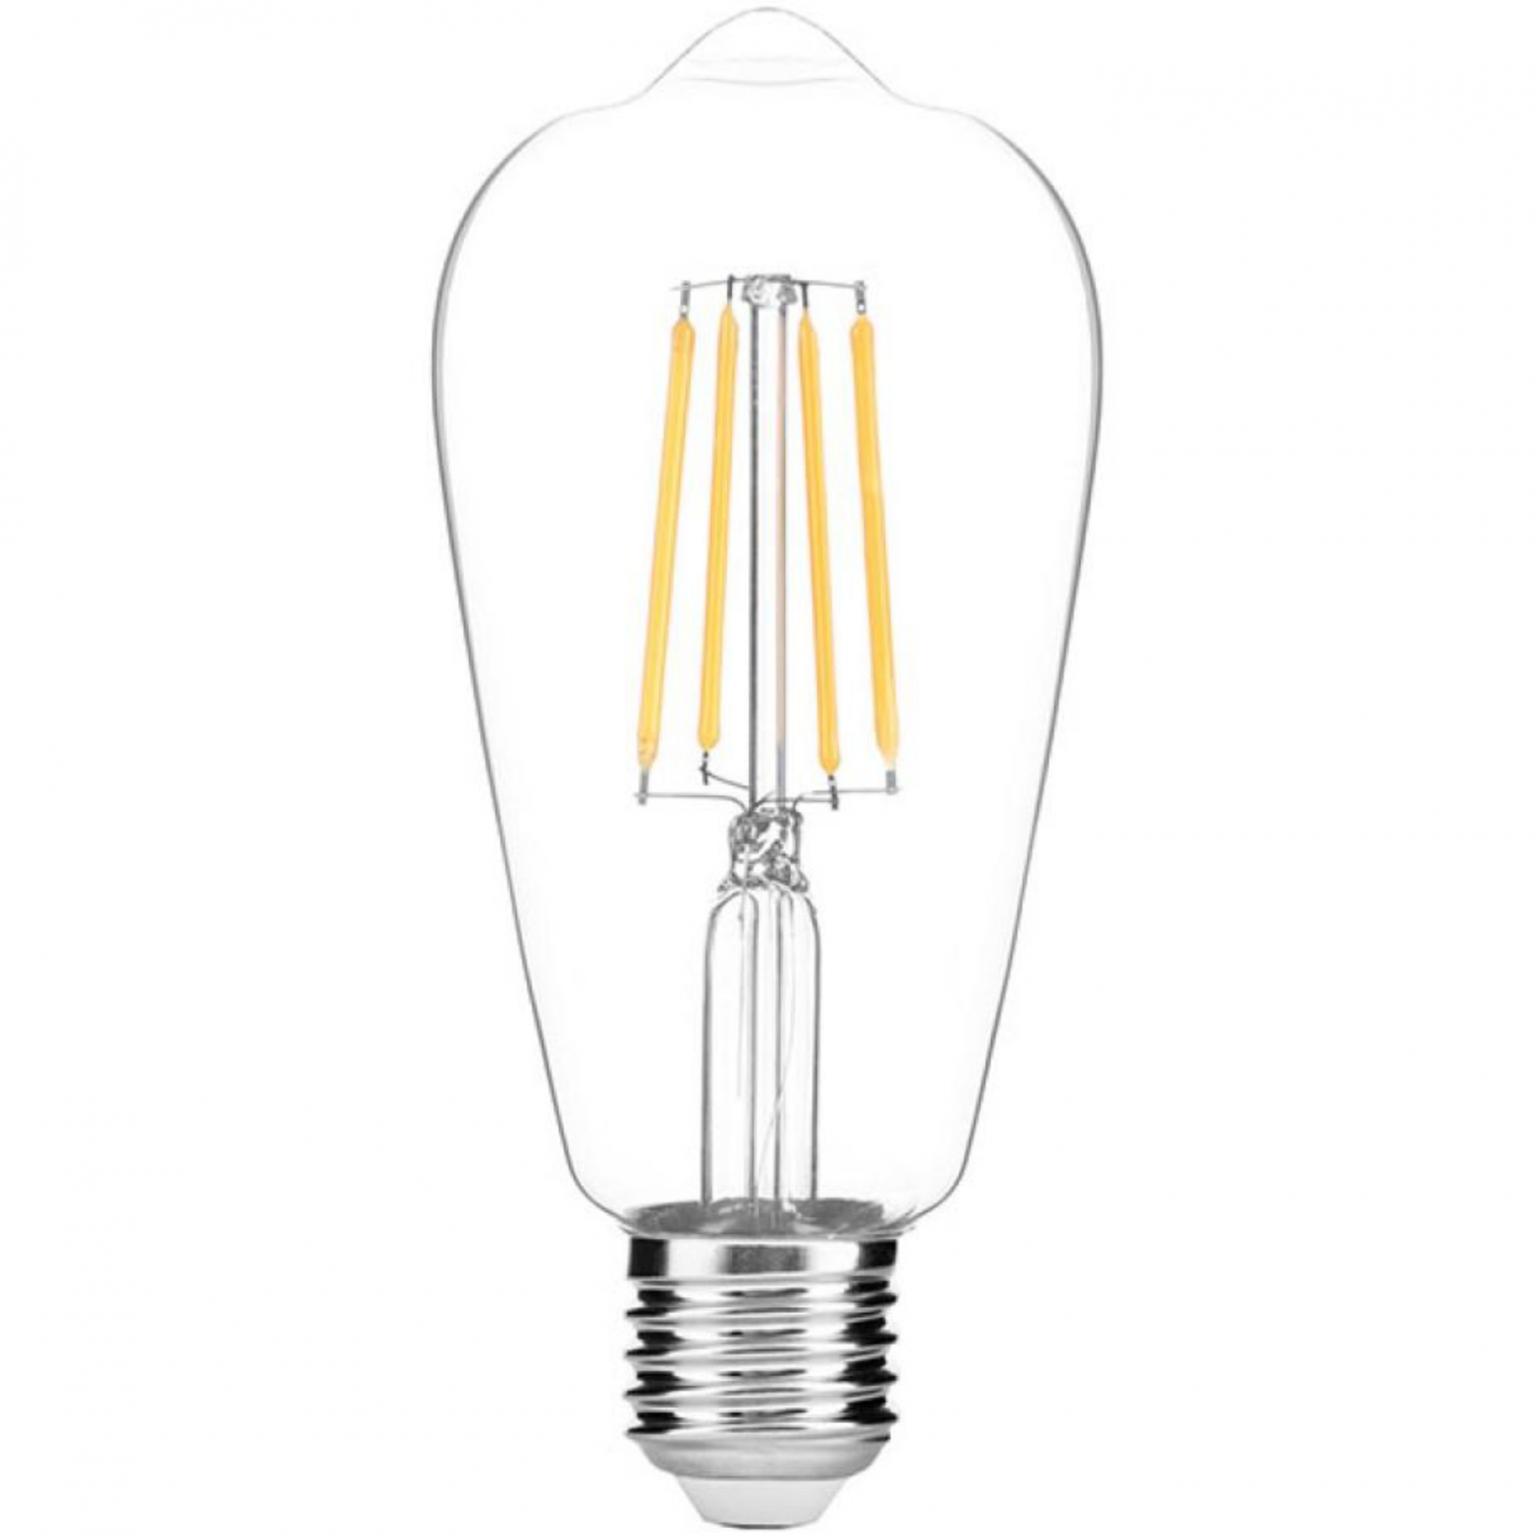 Filament lamp - Avide